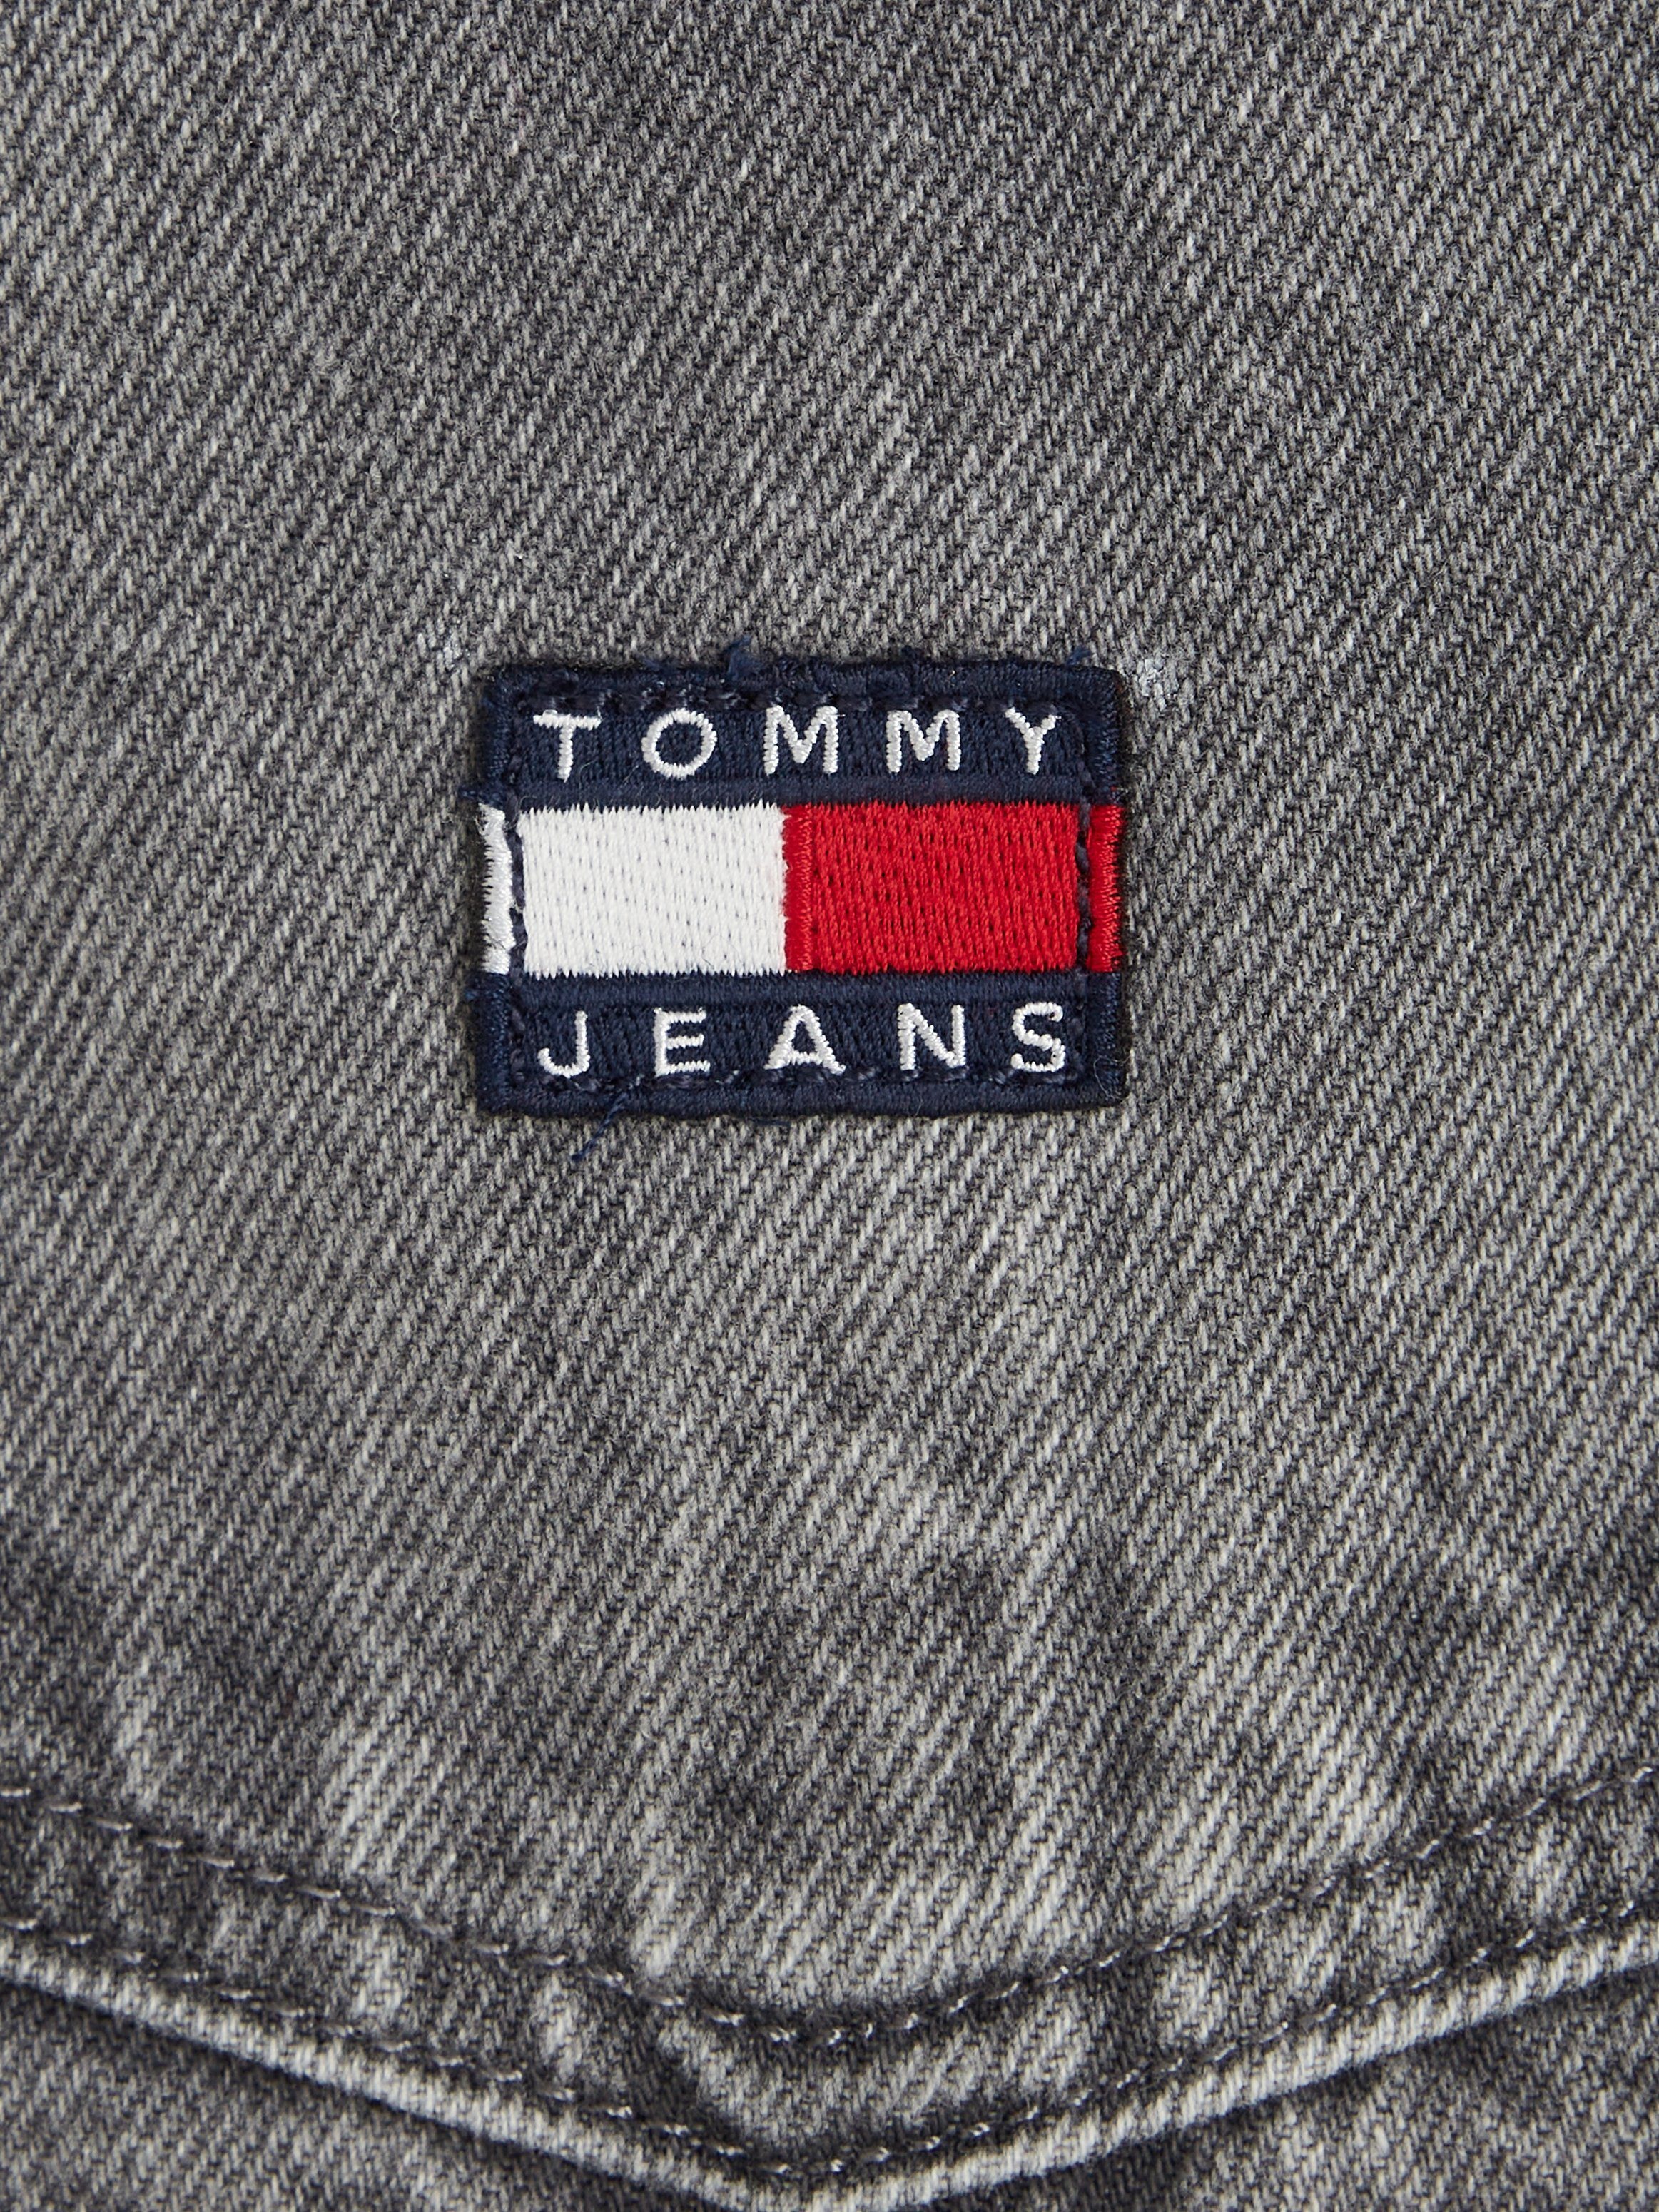 Jeans PINAFORE DRESS Jeanskleid Tommy Jeans Tommy Markenlabel DG4072 mit